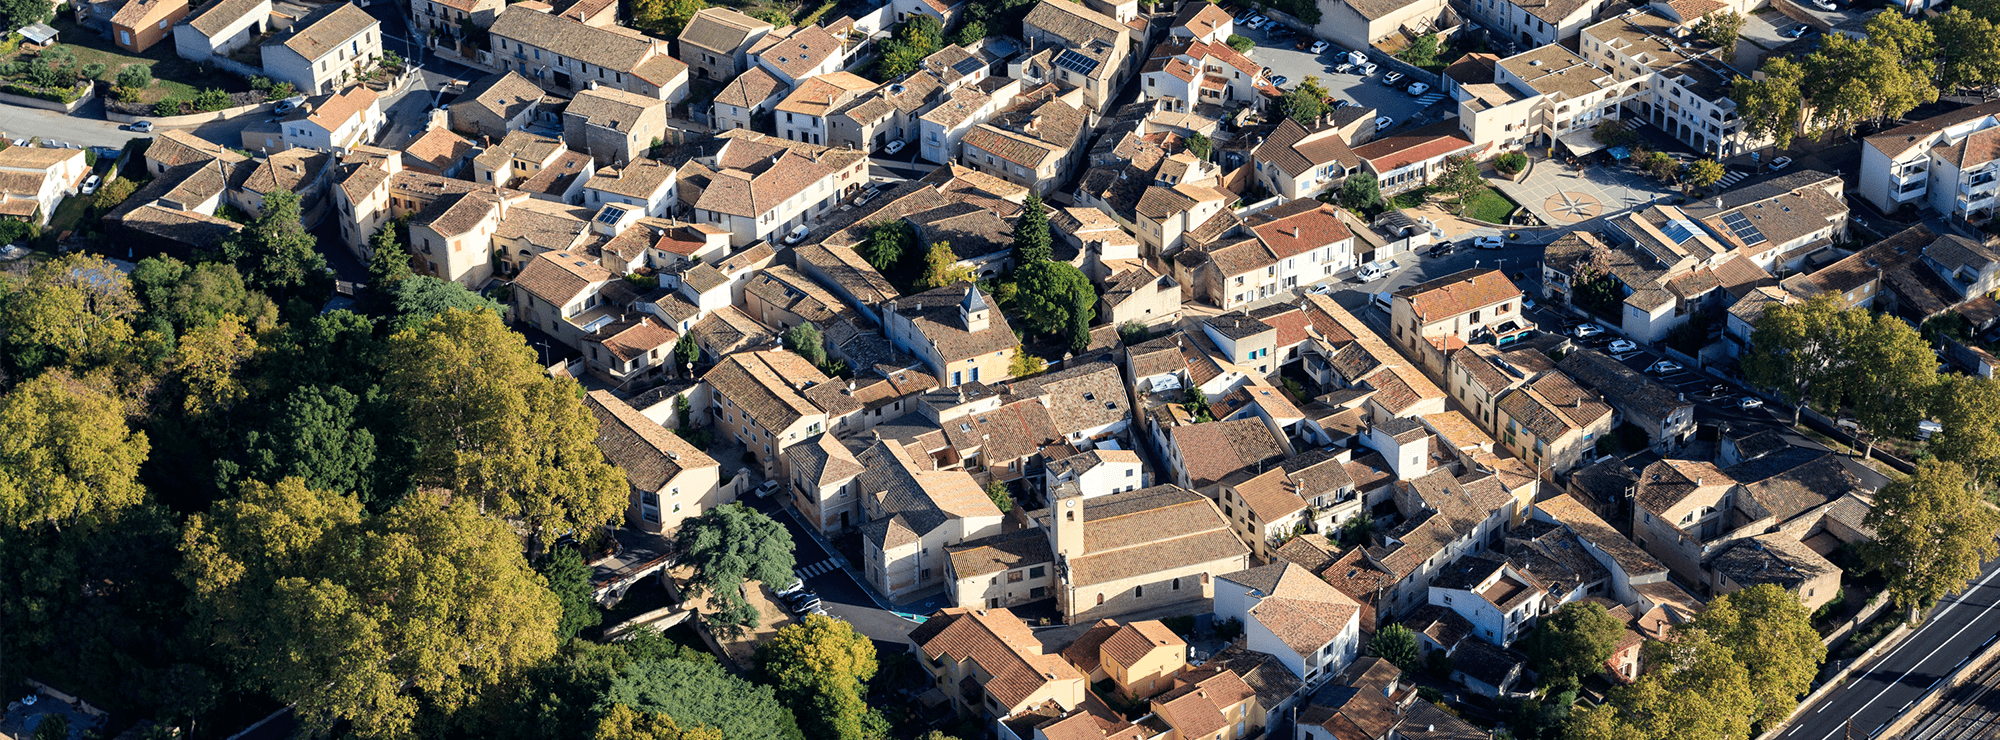 L'OFS de la Métropole de Montpellier - Logements en BRS sur la commune de Saint-Brès.